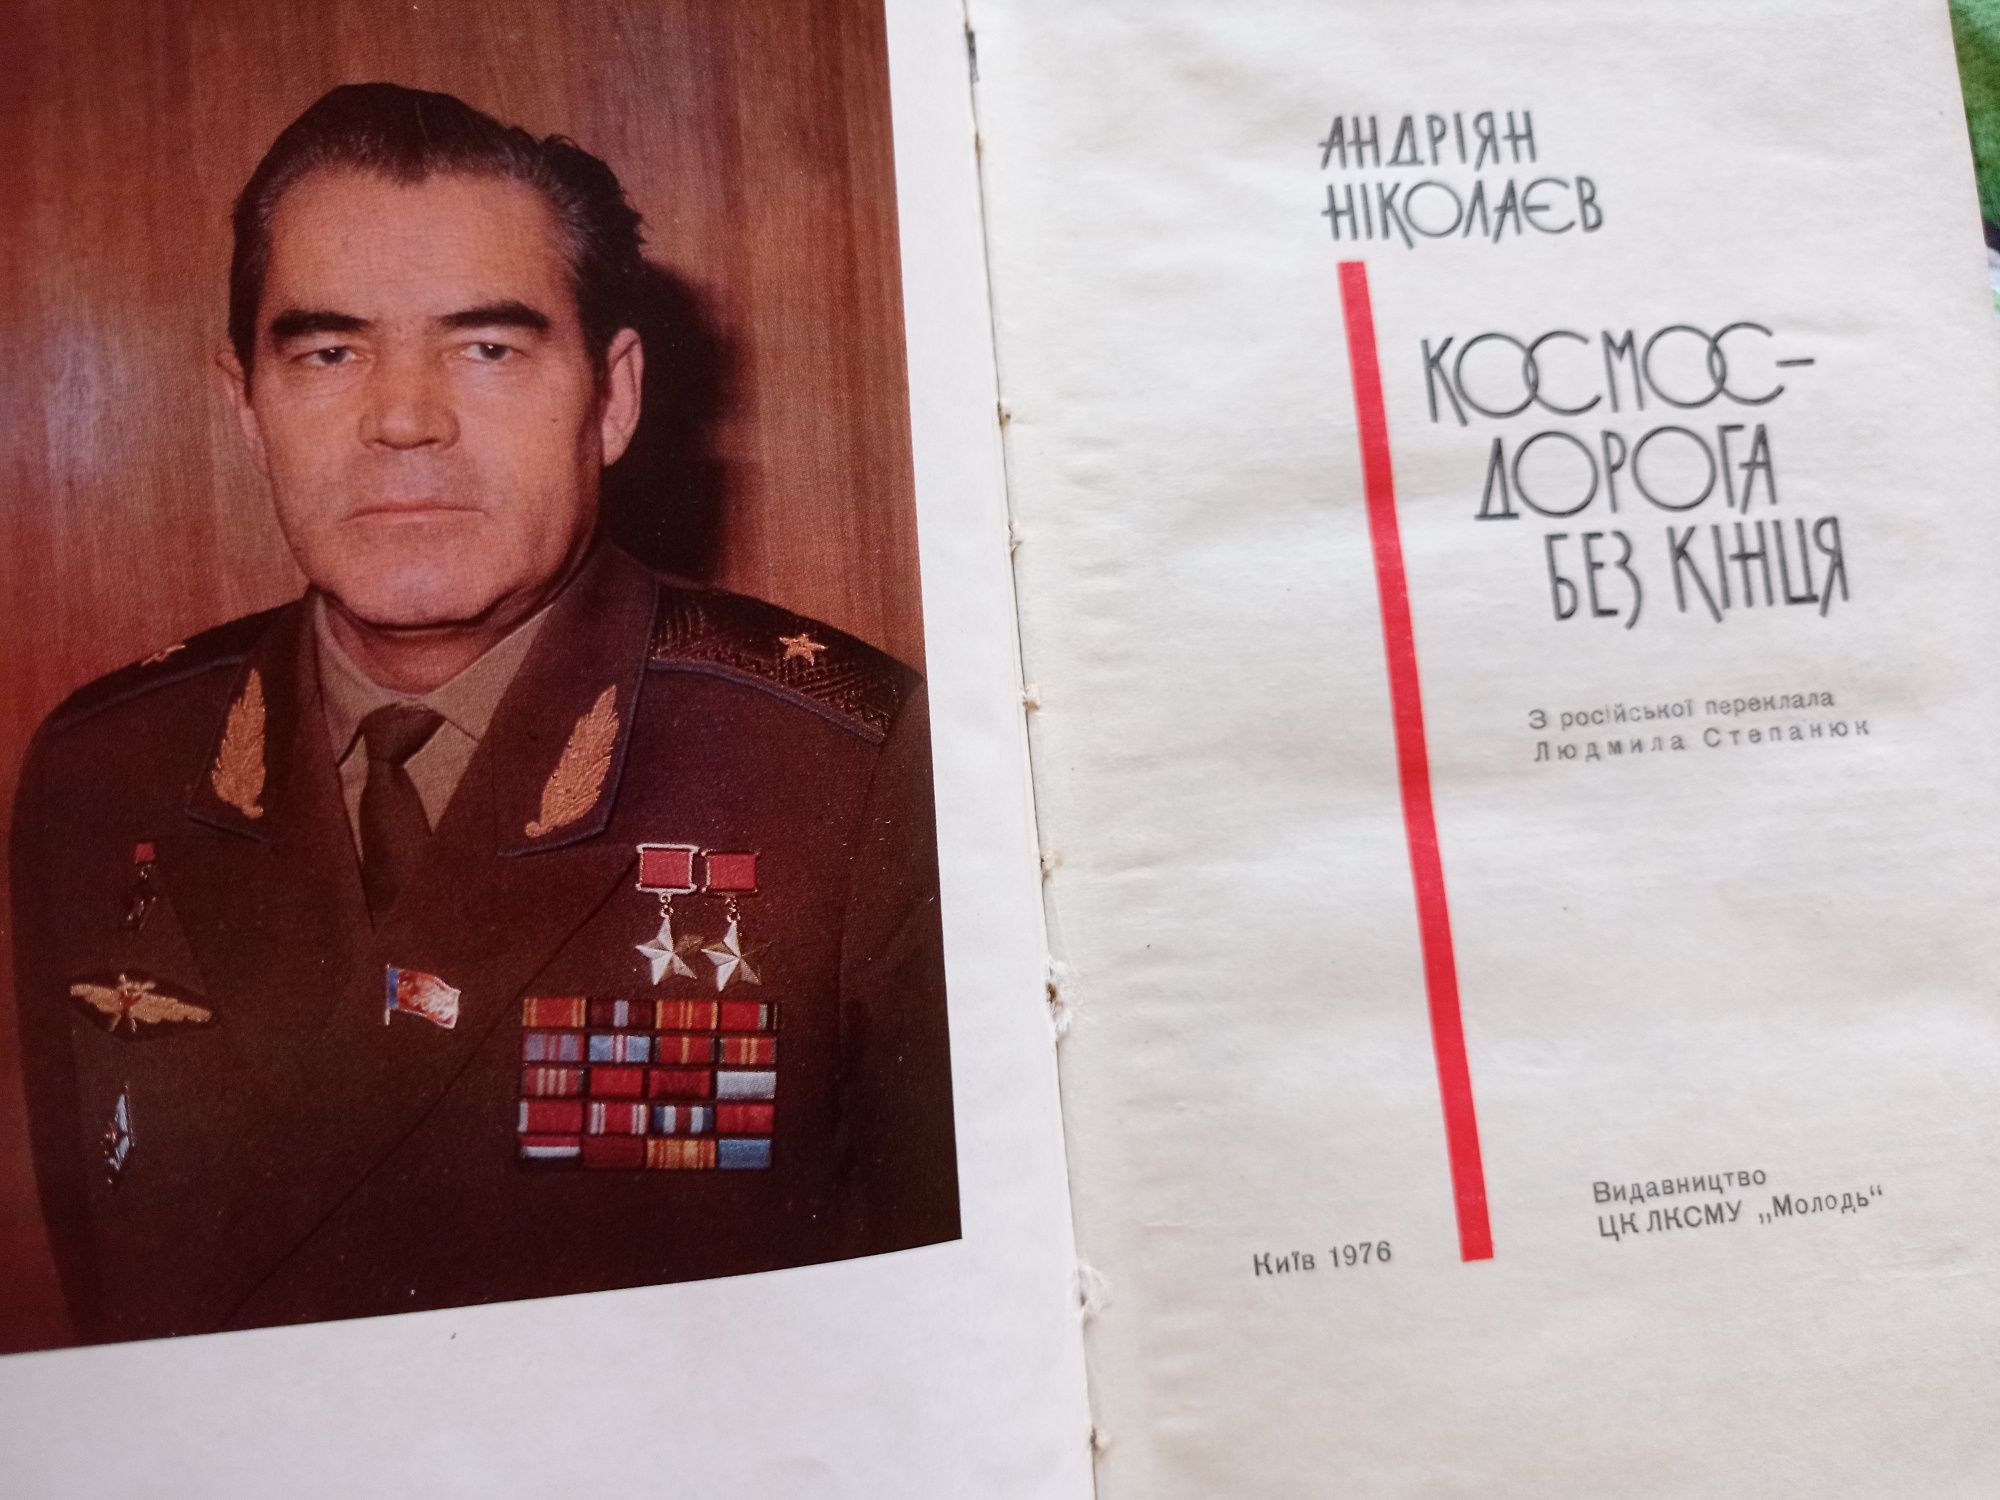 Андріян Ніколаєв Космос - дорога без кінця 1976 р. З фотоілюстраціями